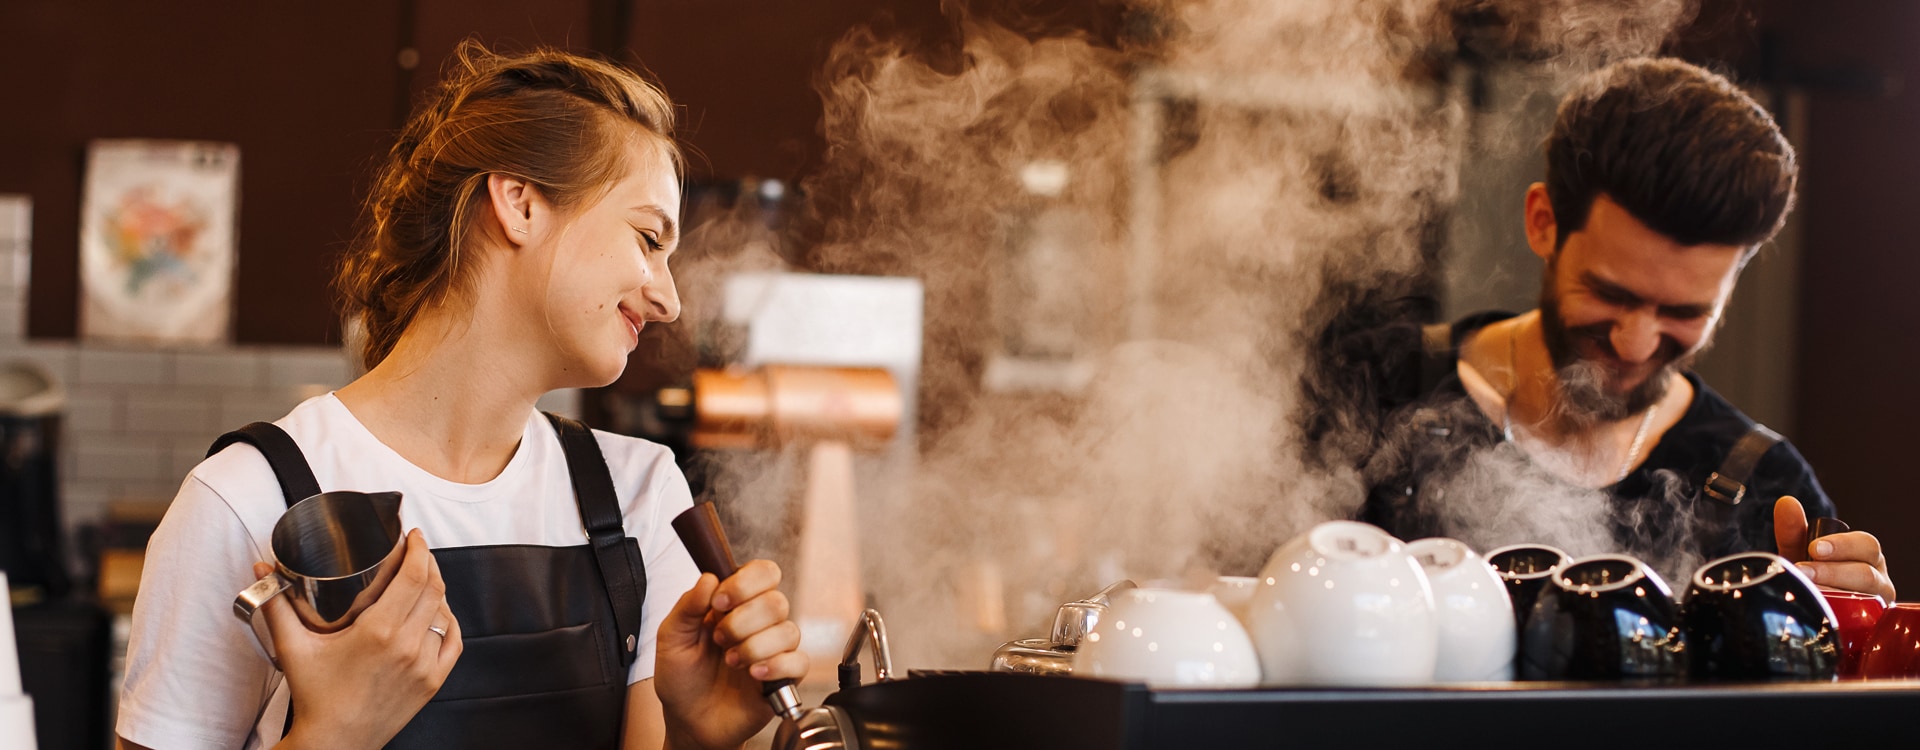 Personen kochen Kaffe an einer dampfenden Kaffeemaschine in einem Restaurant